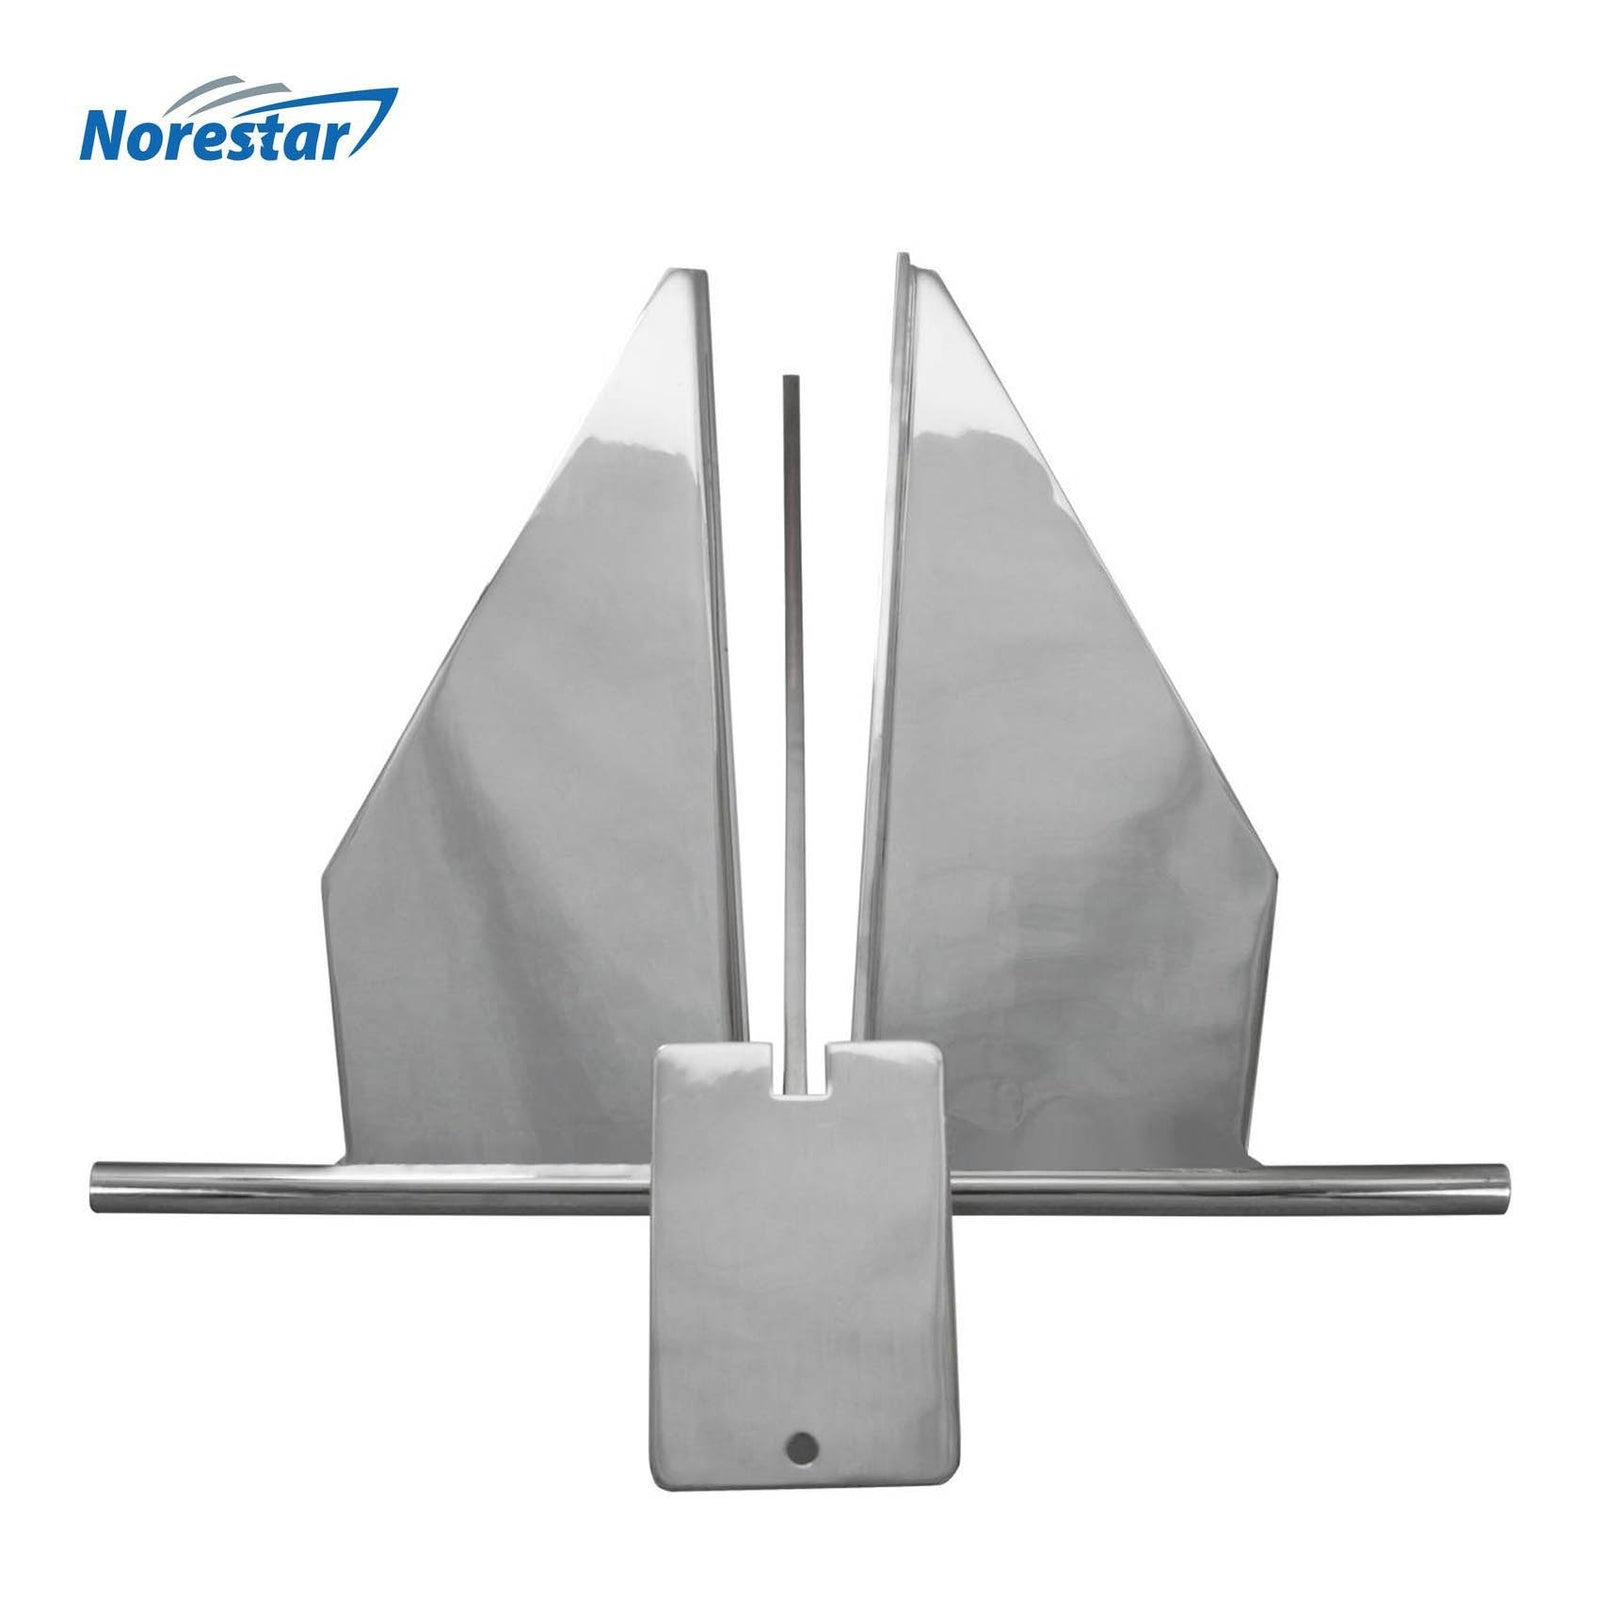 Stainless Steel Danforth/Fluke Boat Anchor by Norestar - Bottom